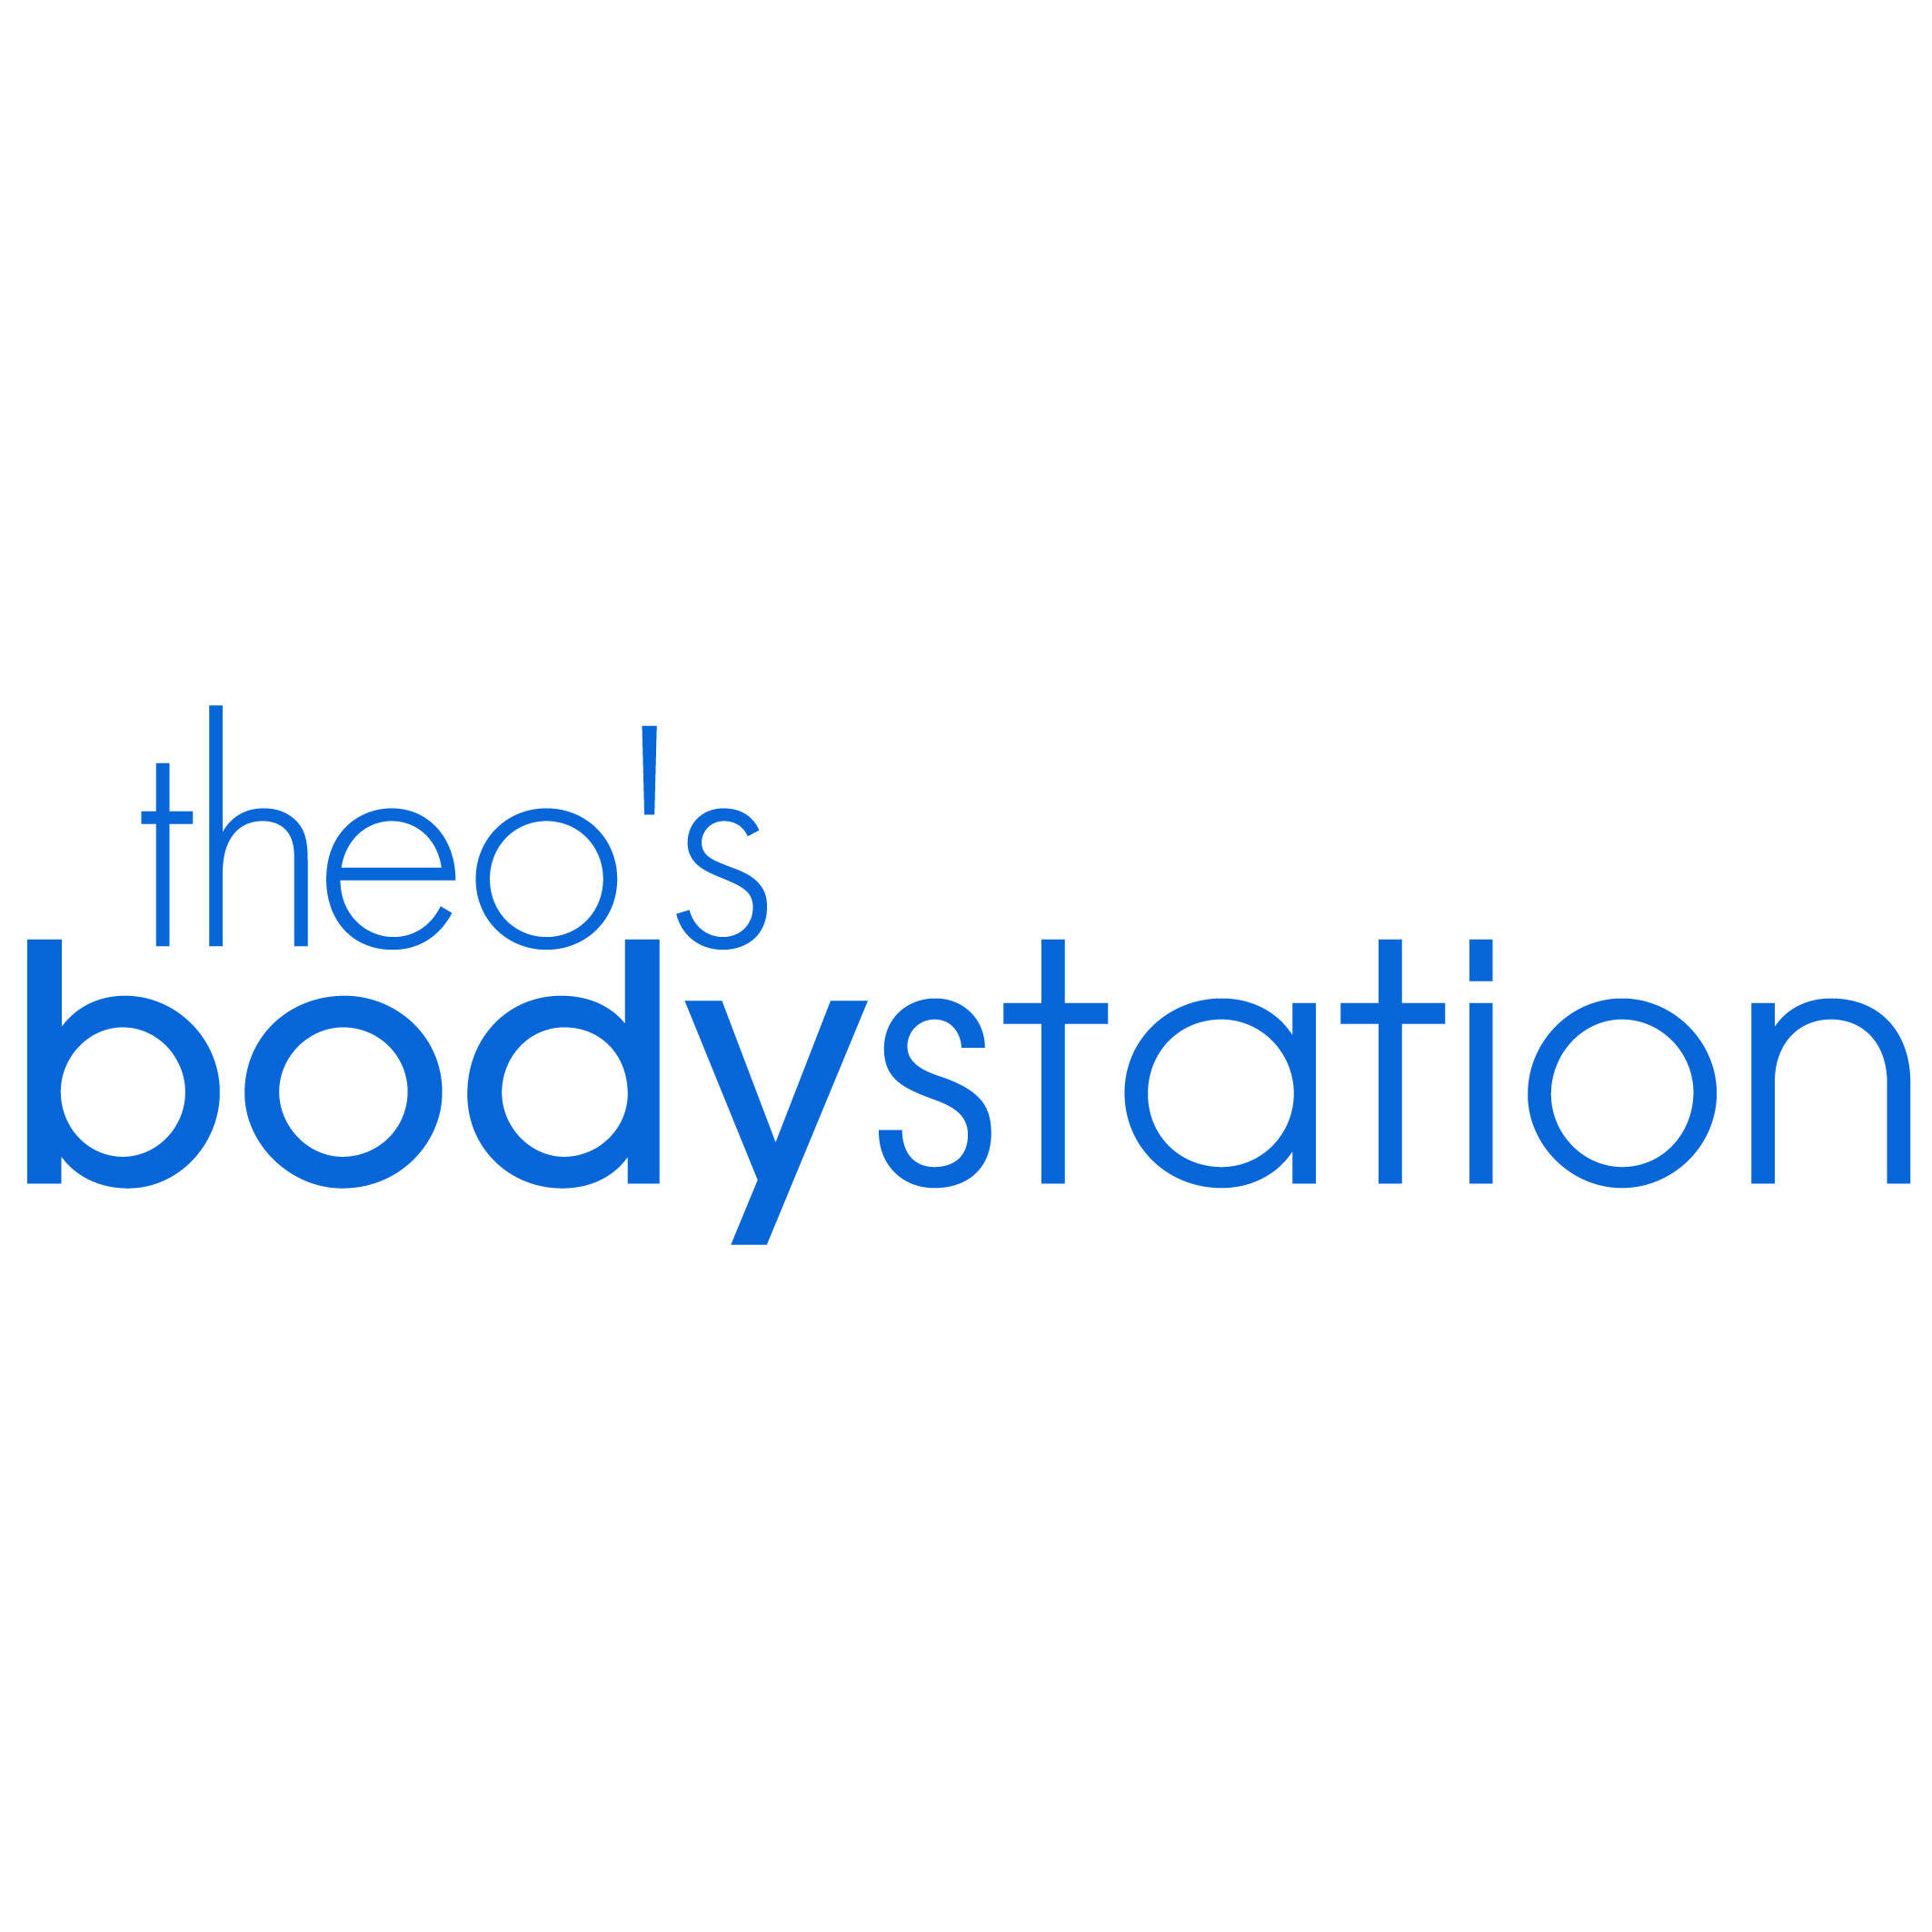 Theo's Bodystation Logo